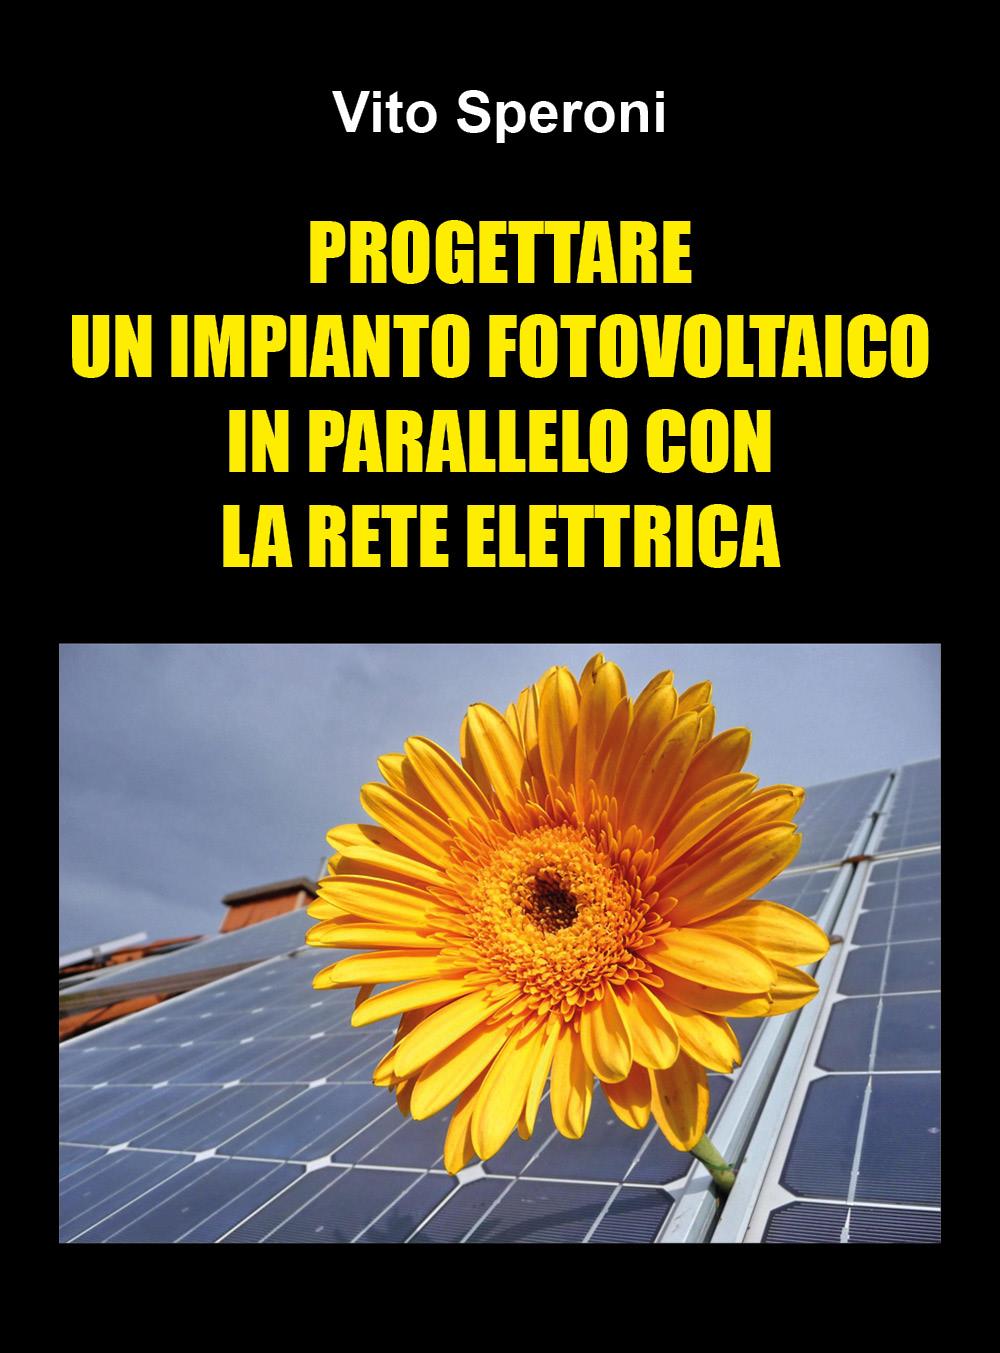 Progettare un impianto fotovoltaico in parallelo con la rete elettrica